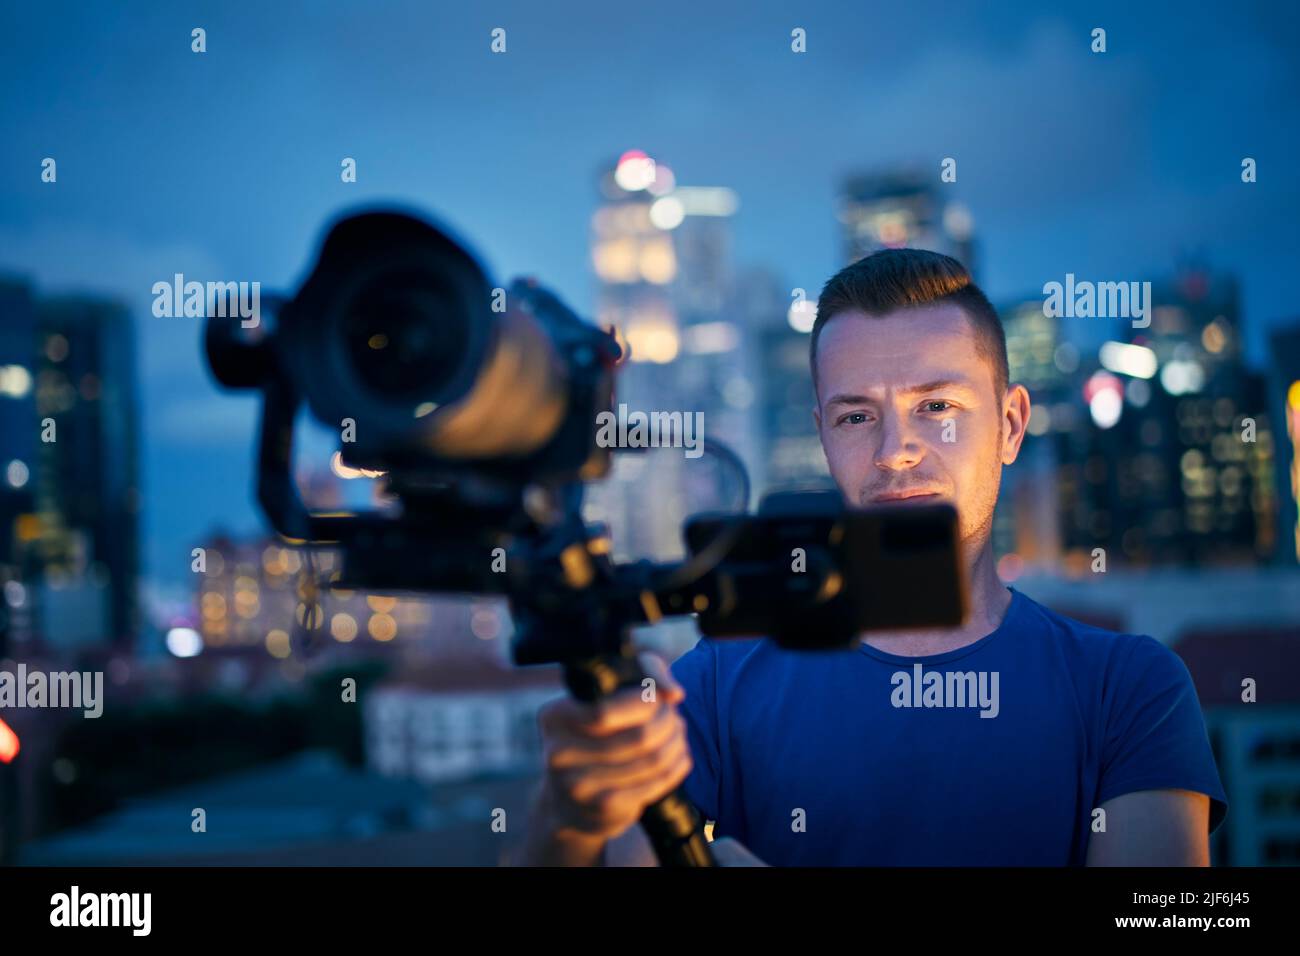 Uomo che filma con fotocamera e gimbal. Ritratto di videografo contro skyline urbano illuminato di notte. Foto Stock